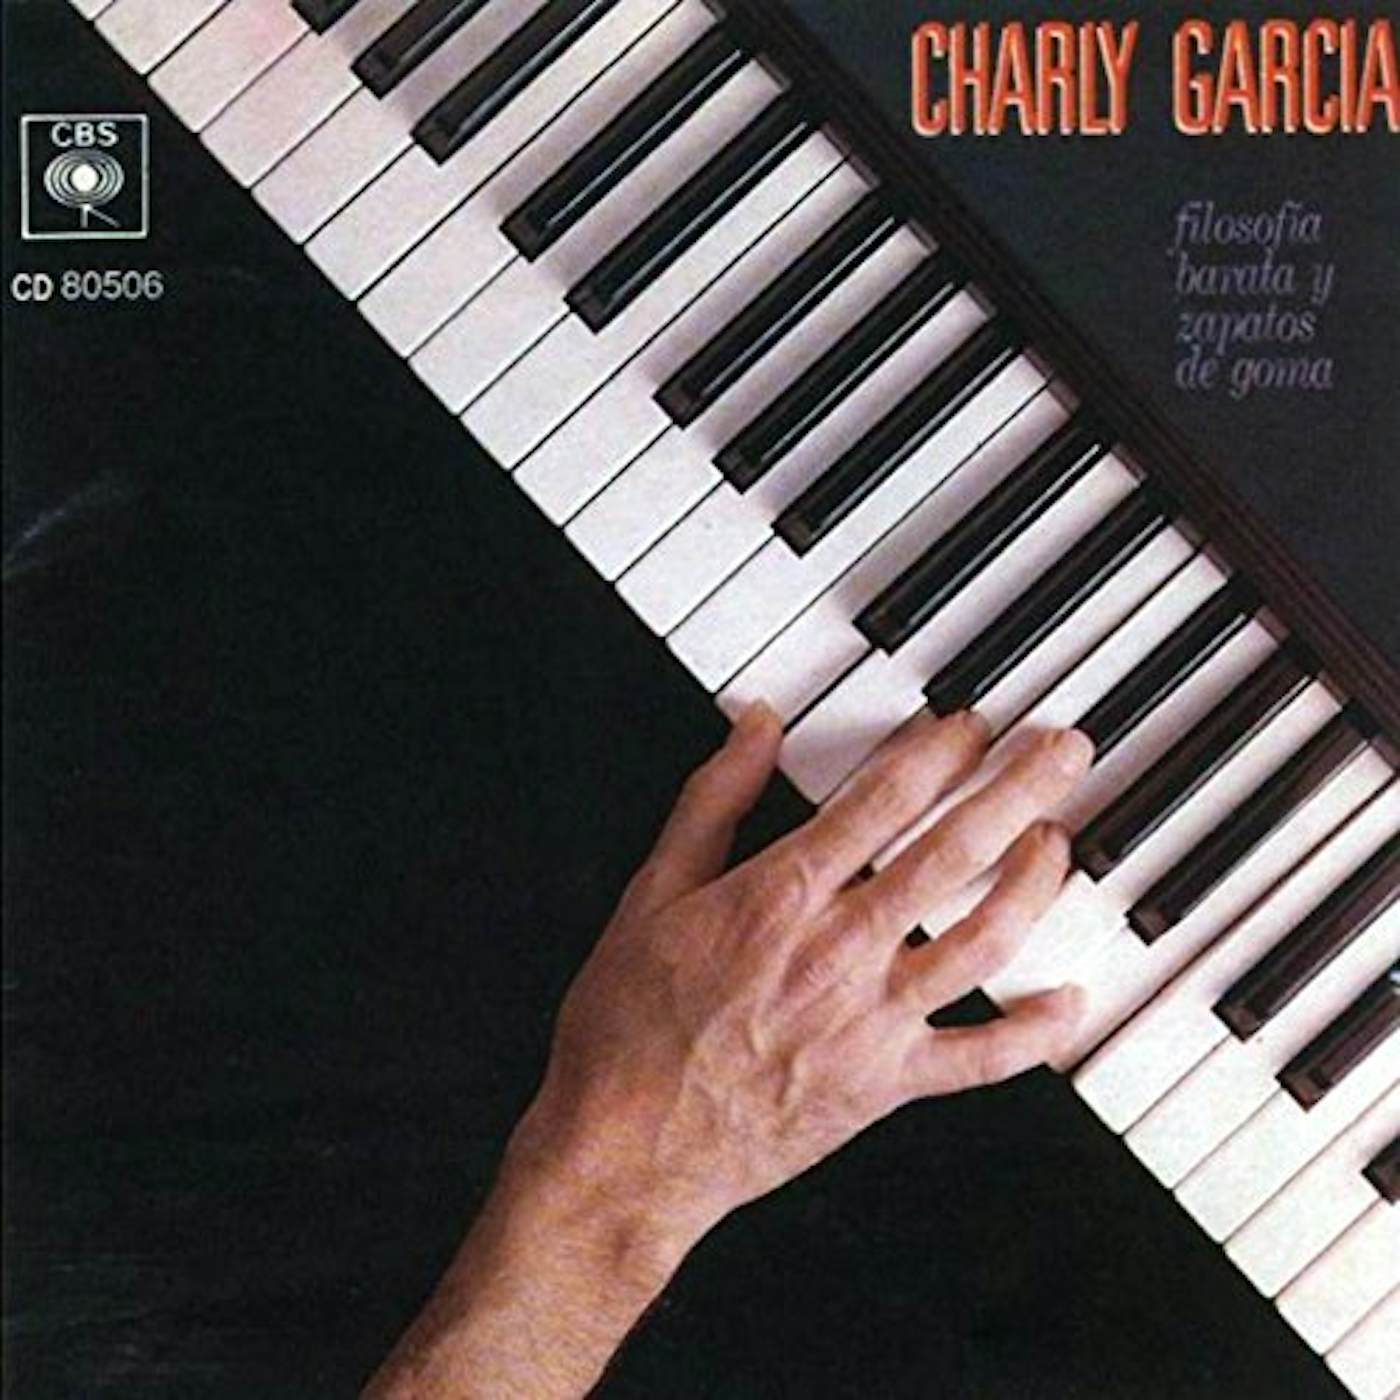 Charly Garcia Pena FILOSOFIA BARATA Y ZAPATOS DE GOMA Vinyl Record